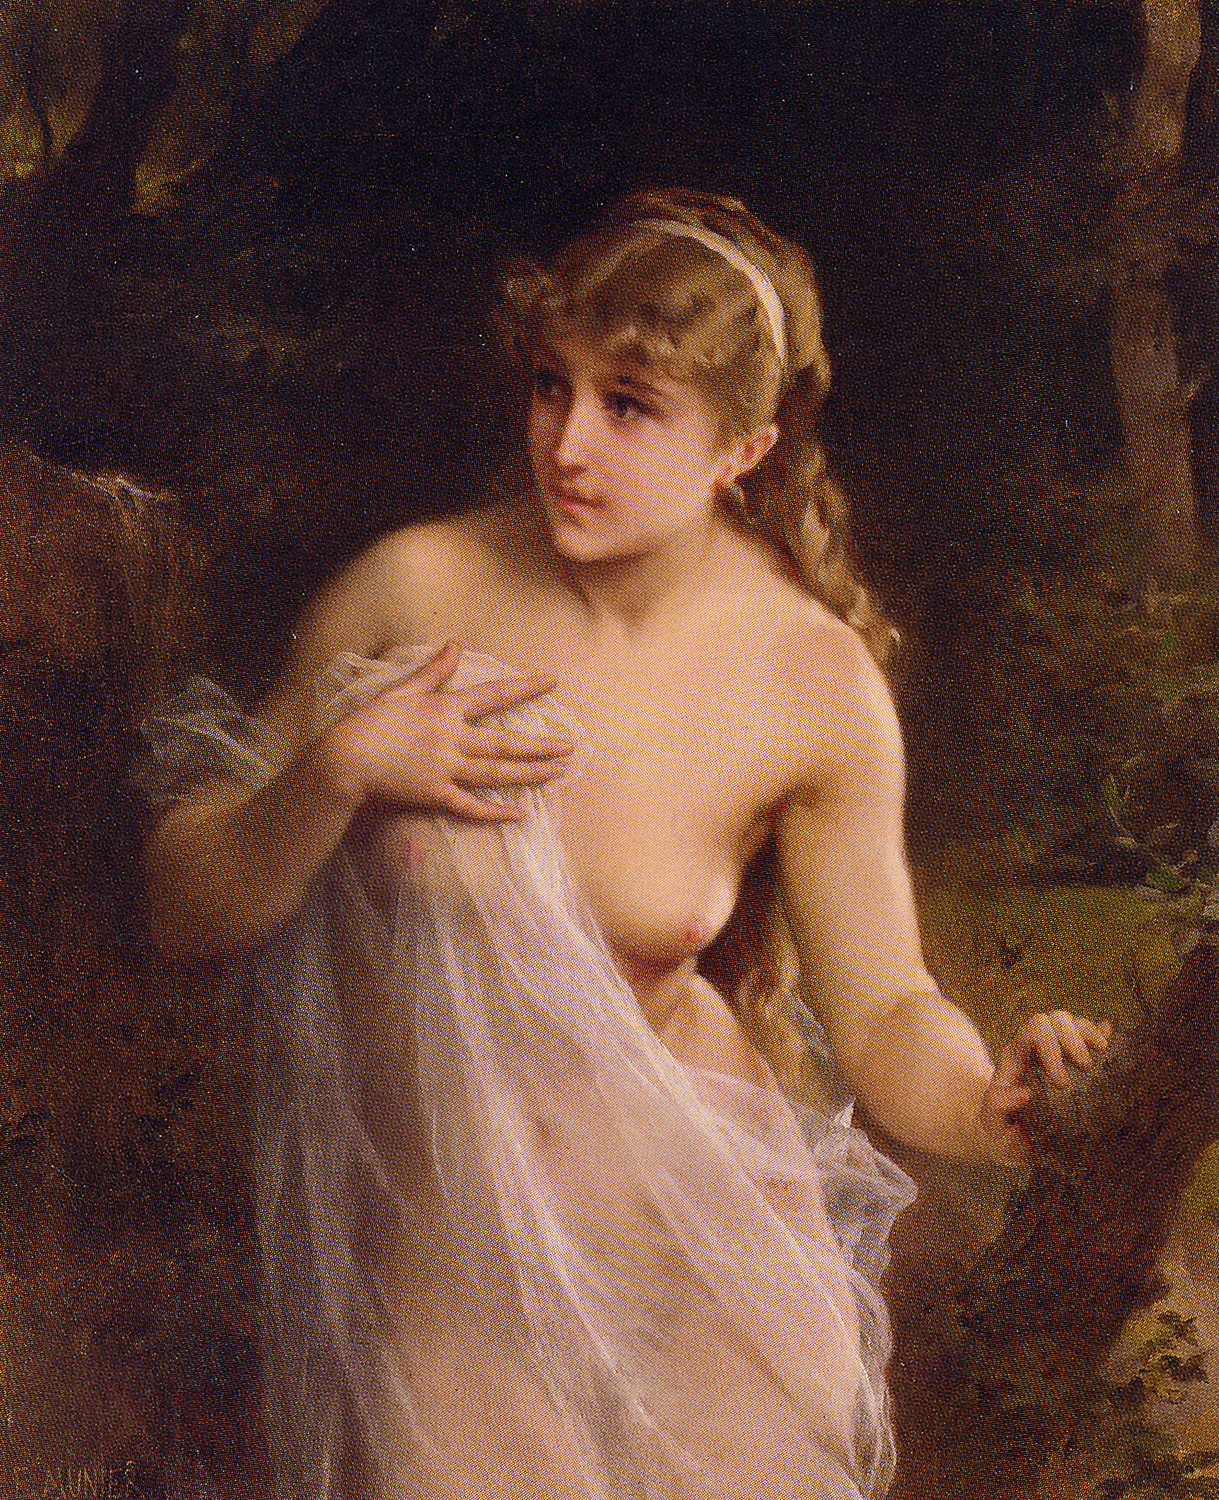 a nude woman in a forest - Femme nu dans la Forêt - Emile Munier